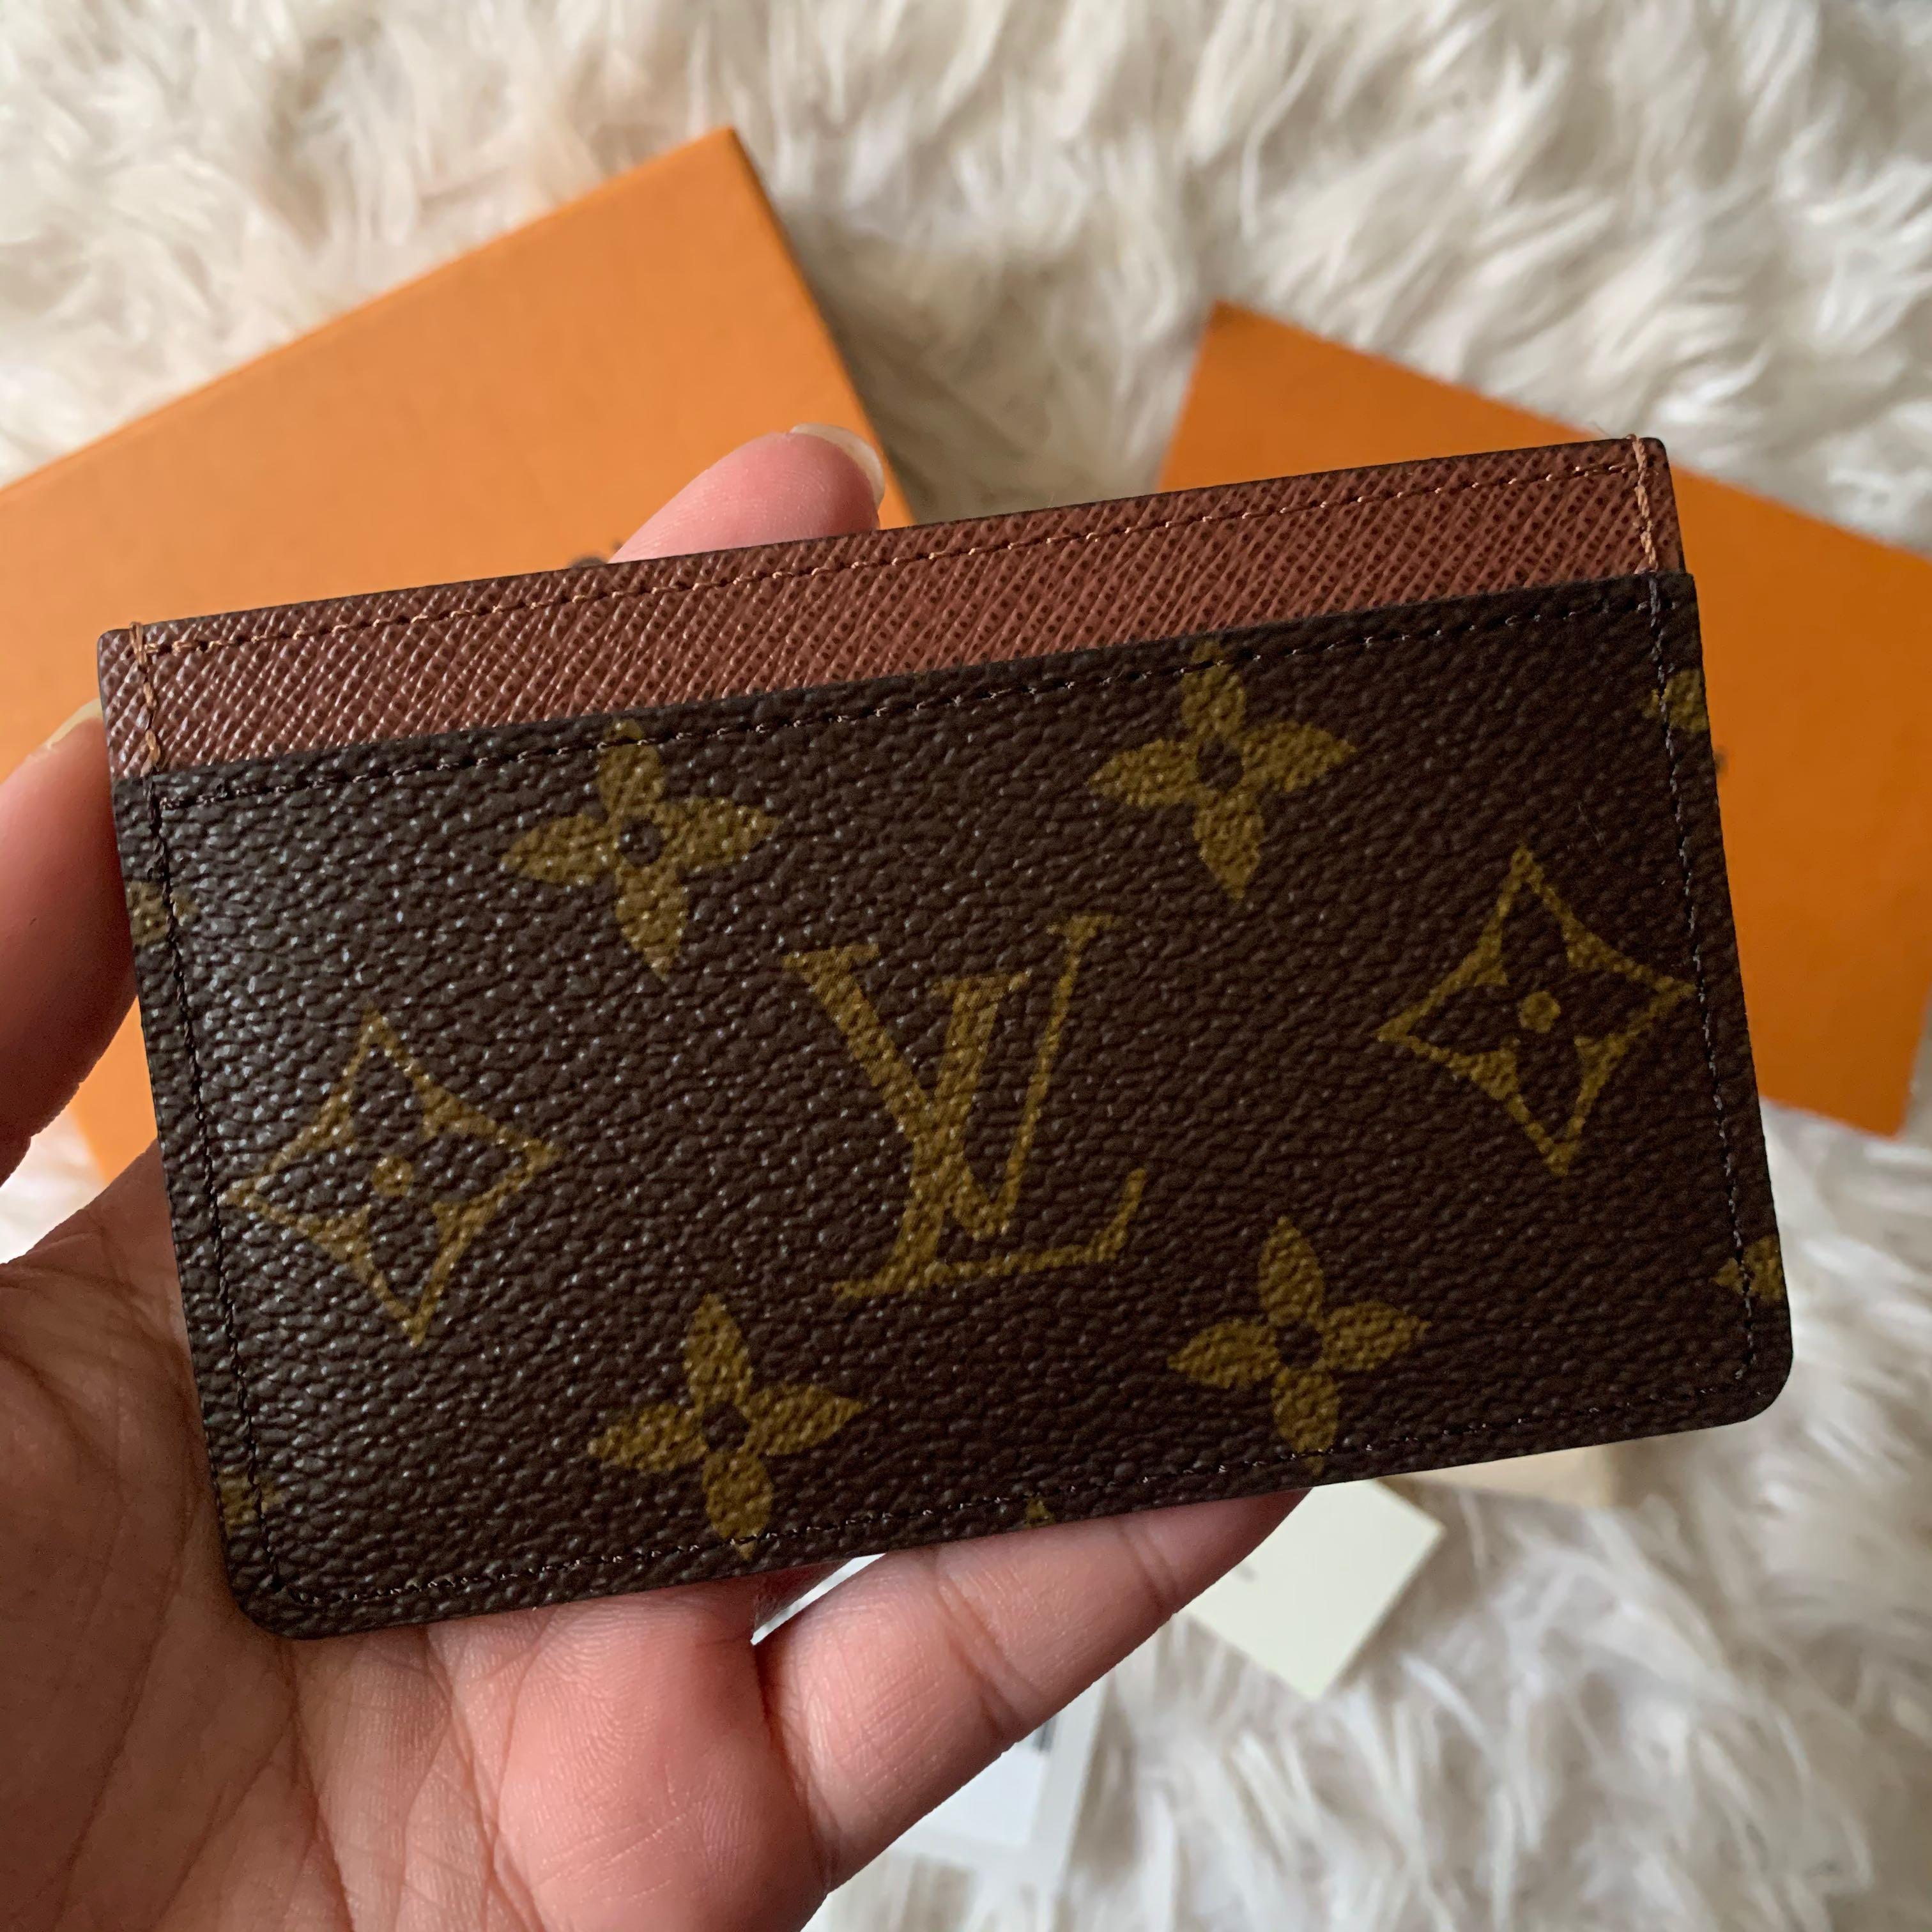 Louis+Vuitton+Card+Holder+Armagnac+Canvas+Monogram for sale online